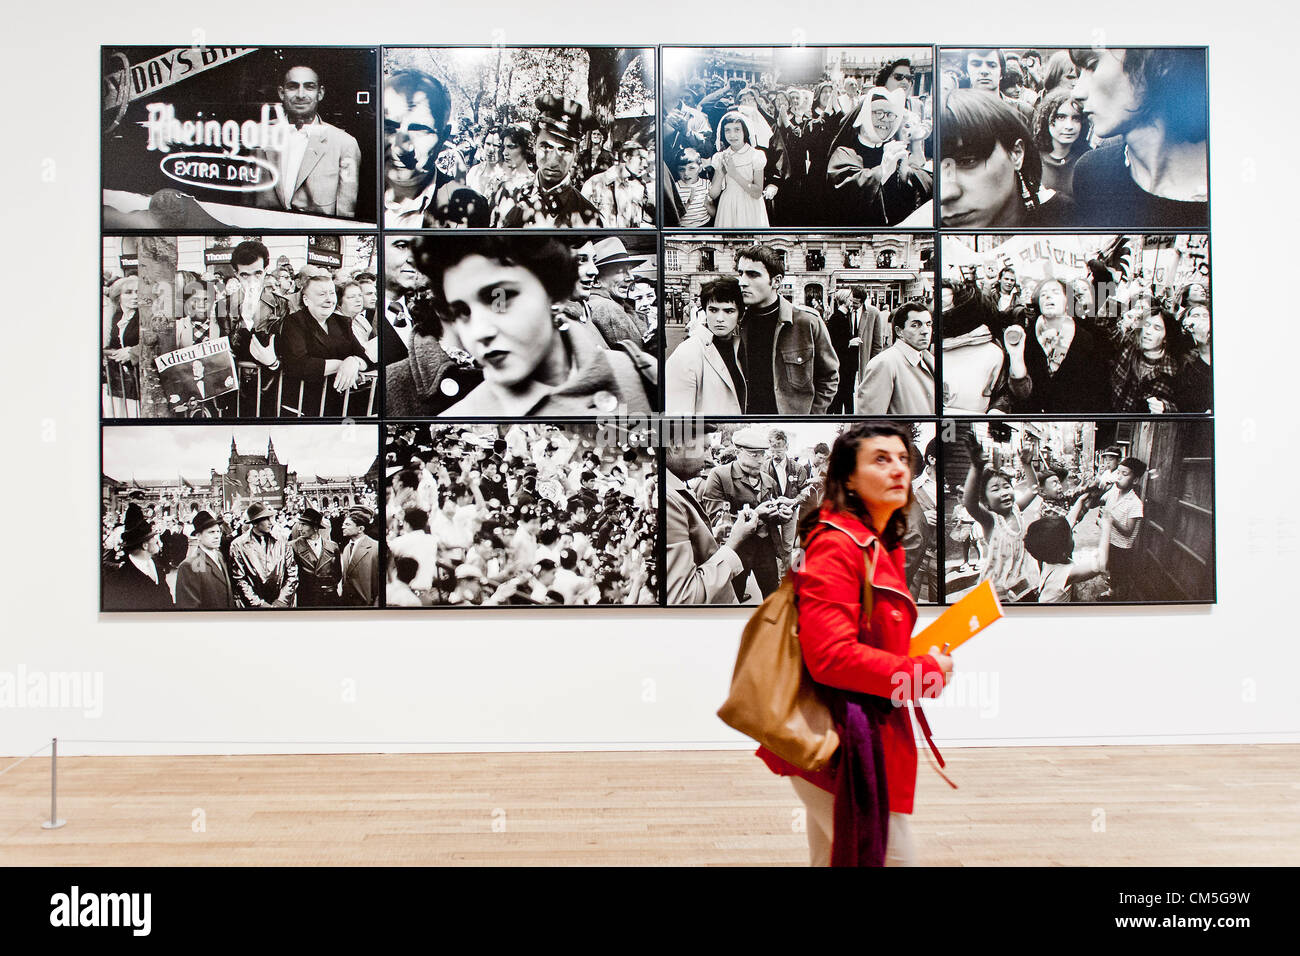 Londres, Royaume-Uni. 8 octobre 2012. La nouvelle exposition de la Tate Modern de l'œuvre de William Klein (travail sur la photo)  + Daido Moriyama (10 octobre 2012 - 20 janvier 2013), mettant en œuvre de deux célèbres photographes vivants. Tate Modern, Londres, Royaume-Uni, 08 octobre 2012. Banque D'Images